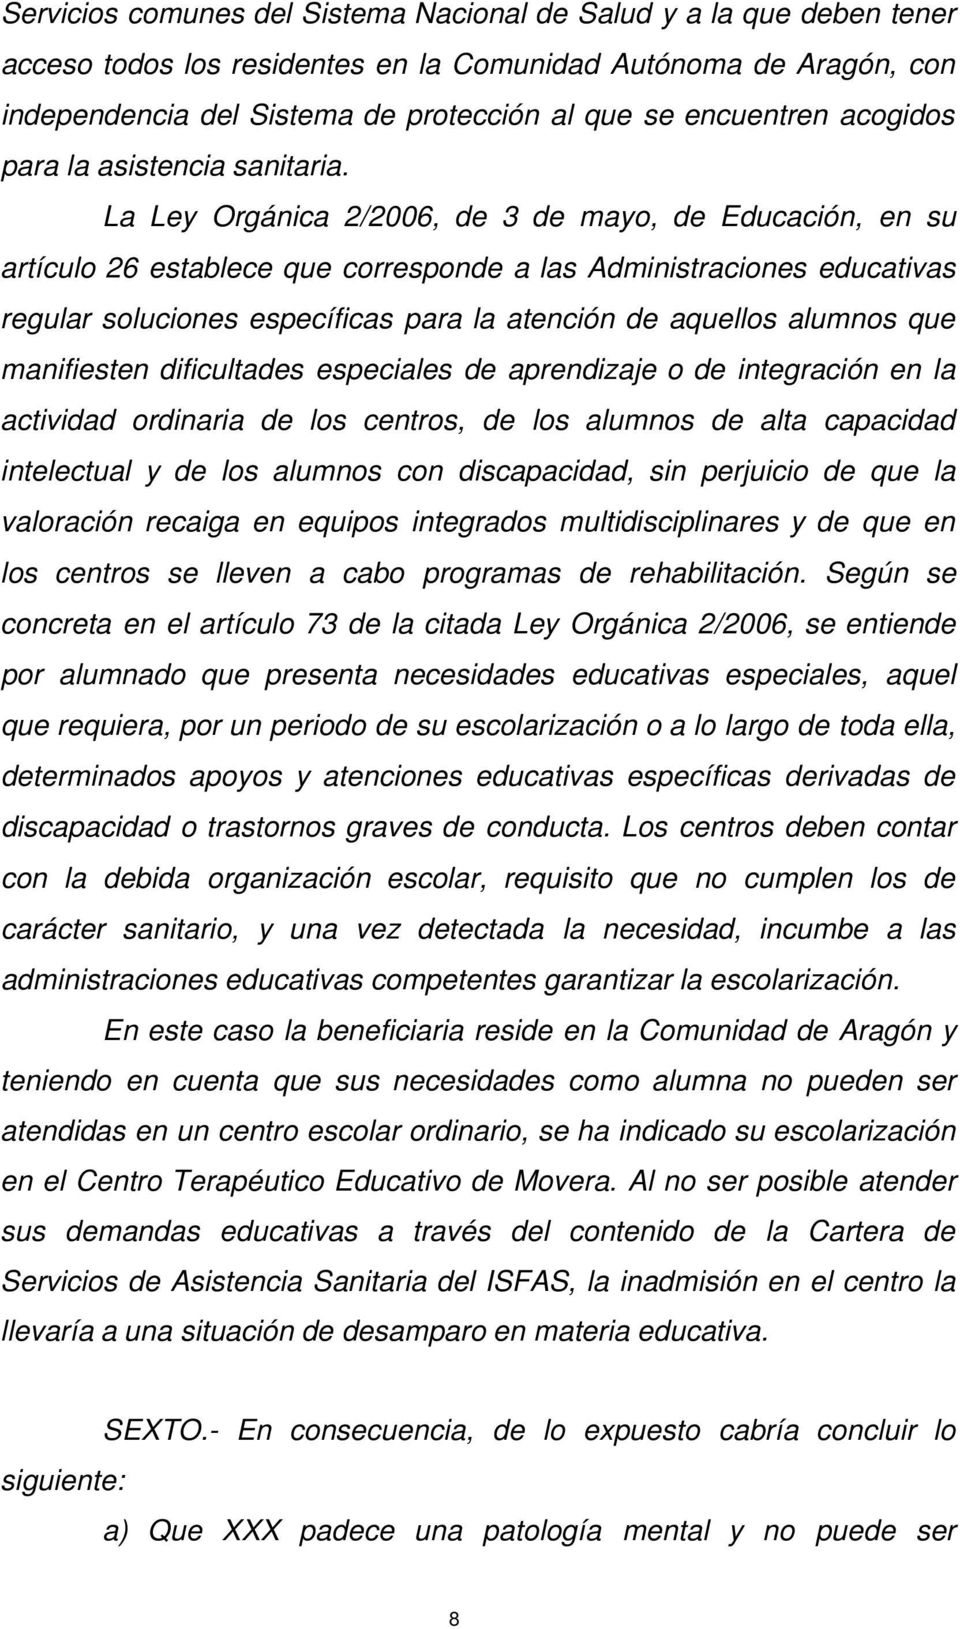 La Ley Orgánica 2/2006, de 3 de mayo, de Educación, en su artículo 26 establece que corresponde a las Administraciones educativas regular soluciones específicas para la atención de aquellos alumnos